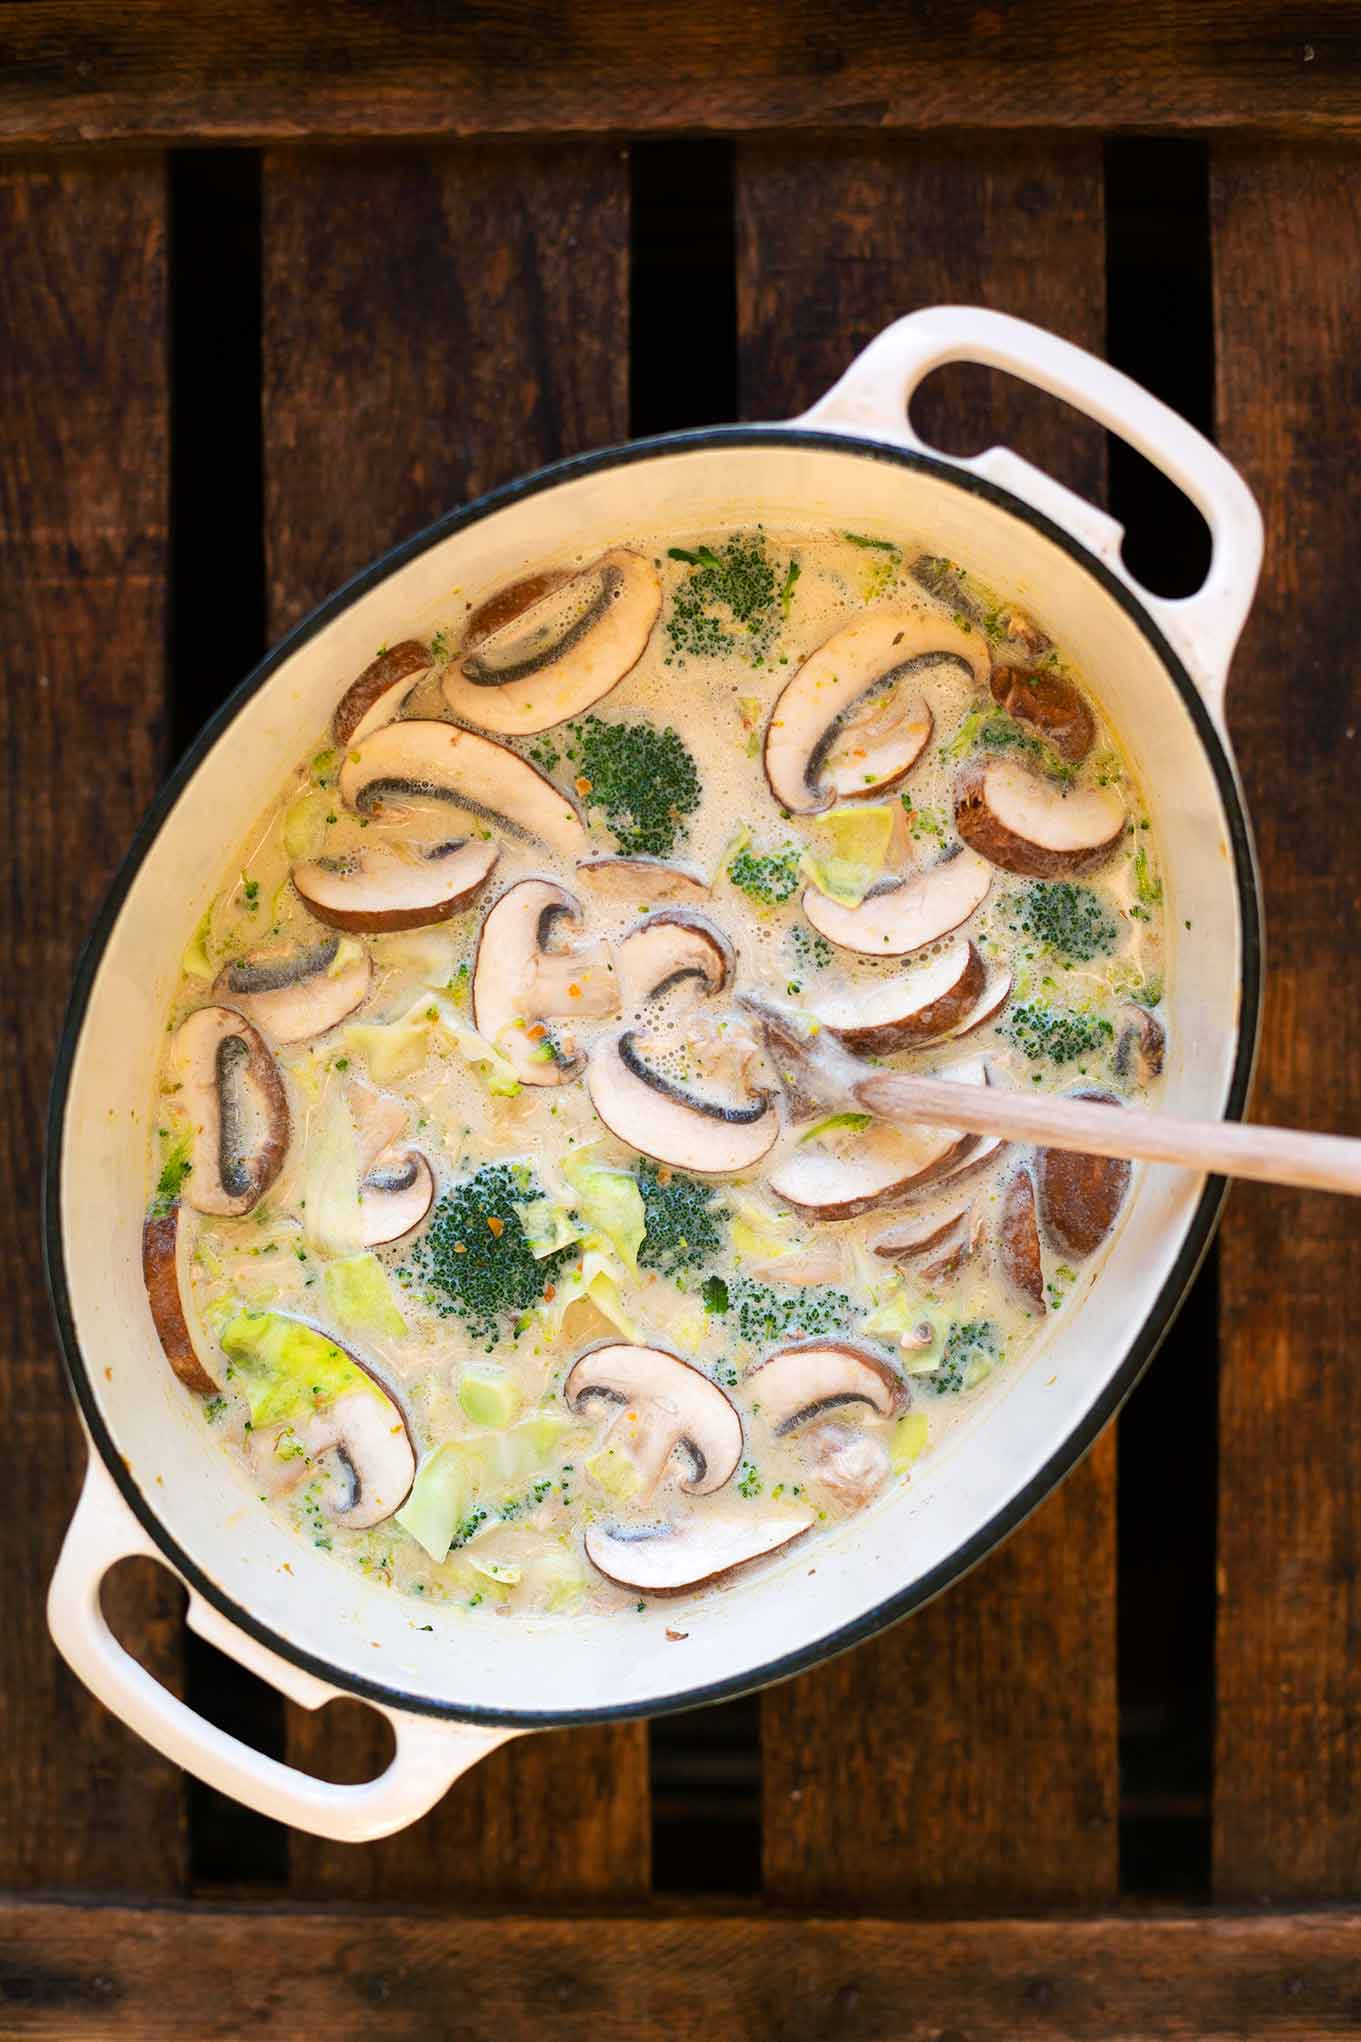 Thai-Kokos-Suppe mit Gemüse ist das perfekte Feierabendrezept. Nur ein Topf und in 30 Minuten fertig. So einfach, das musst du testen! - Kochkarussell Foodblog #thaikokossuppe #thairezept #thaisuppe #kochkarussell